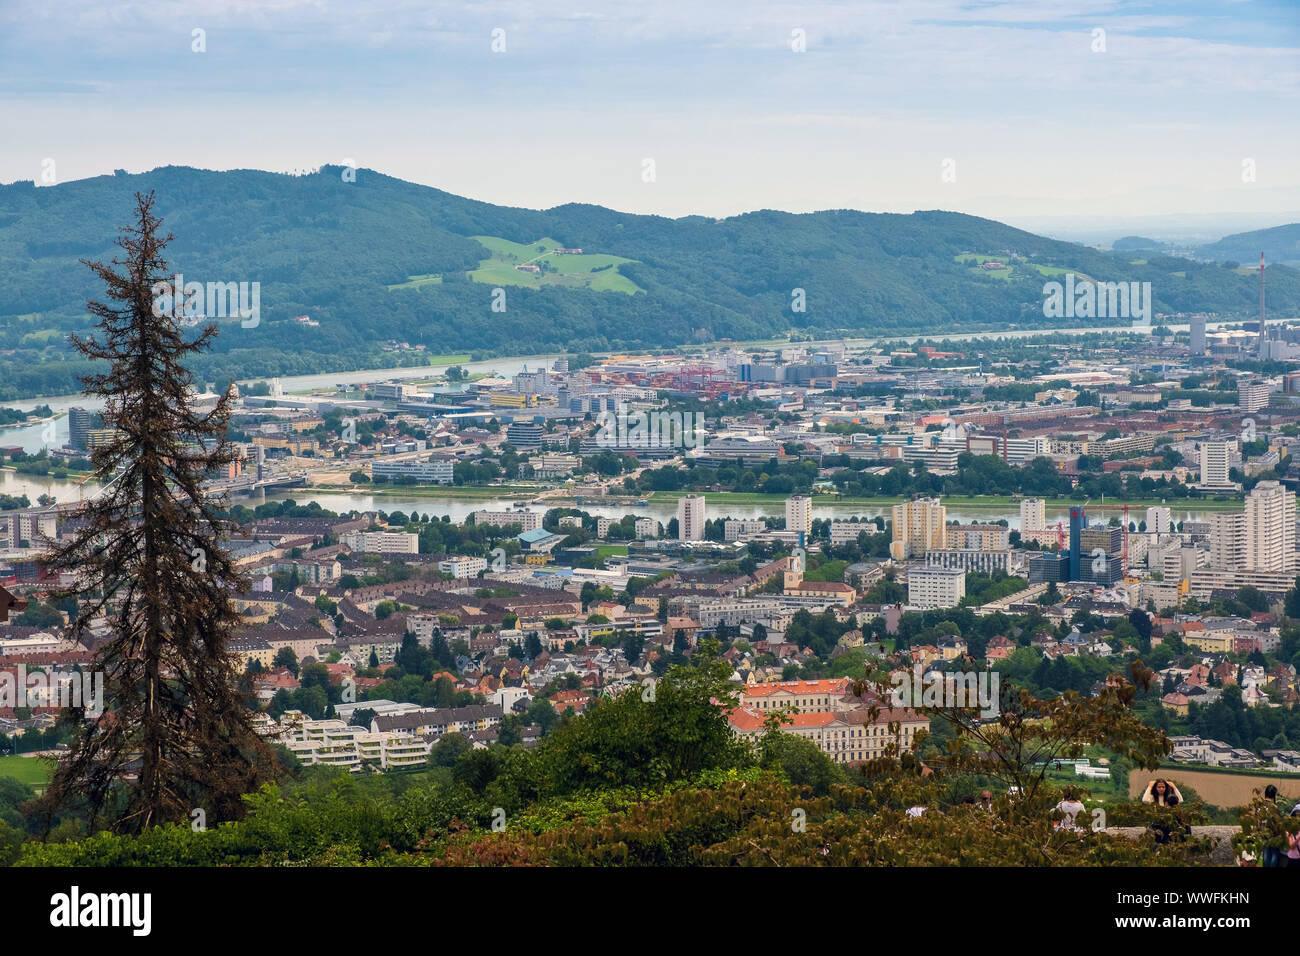 Die Postlingberg ist ein 539 Meter hoher Berg am linken Ufer der Donau in der Stadt Linz, Österreich. Es ist ein beliebtes Touristenziel, mit einem vi. Stockfoto